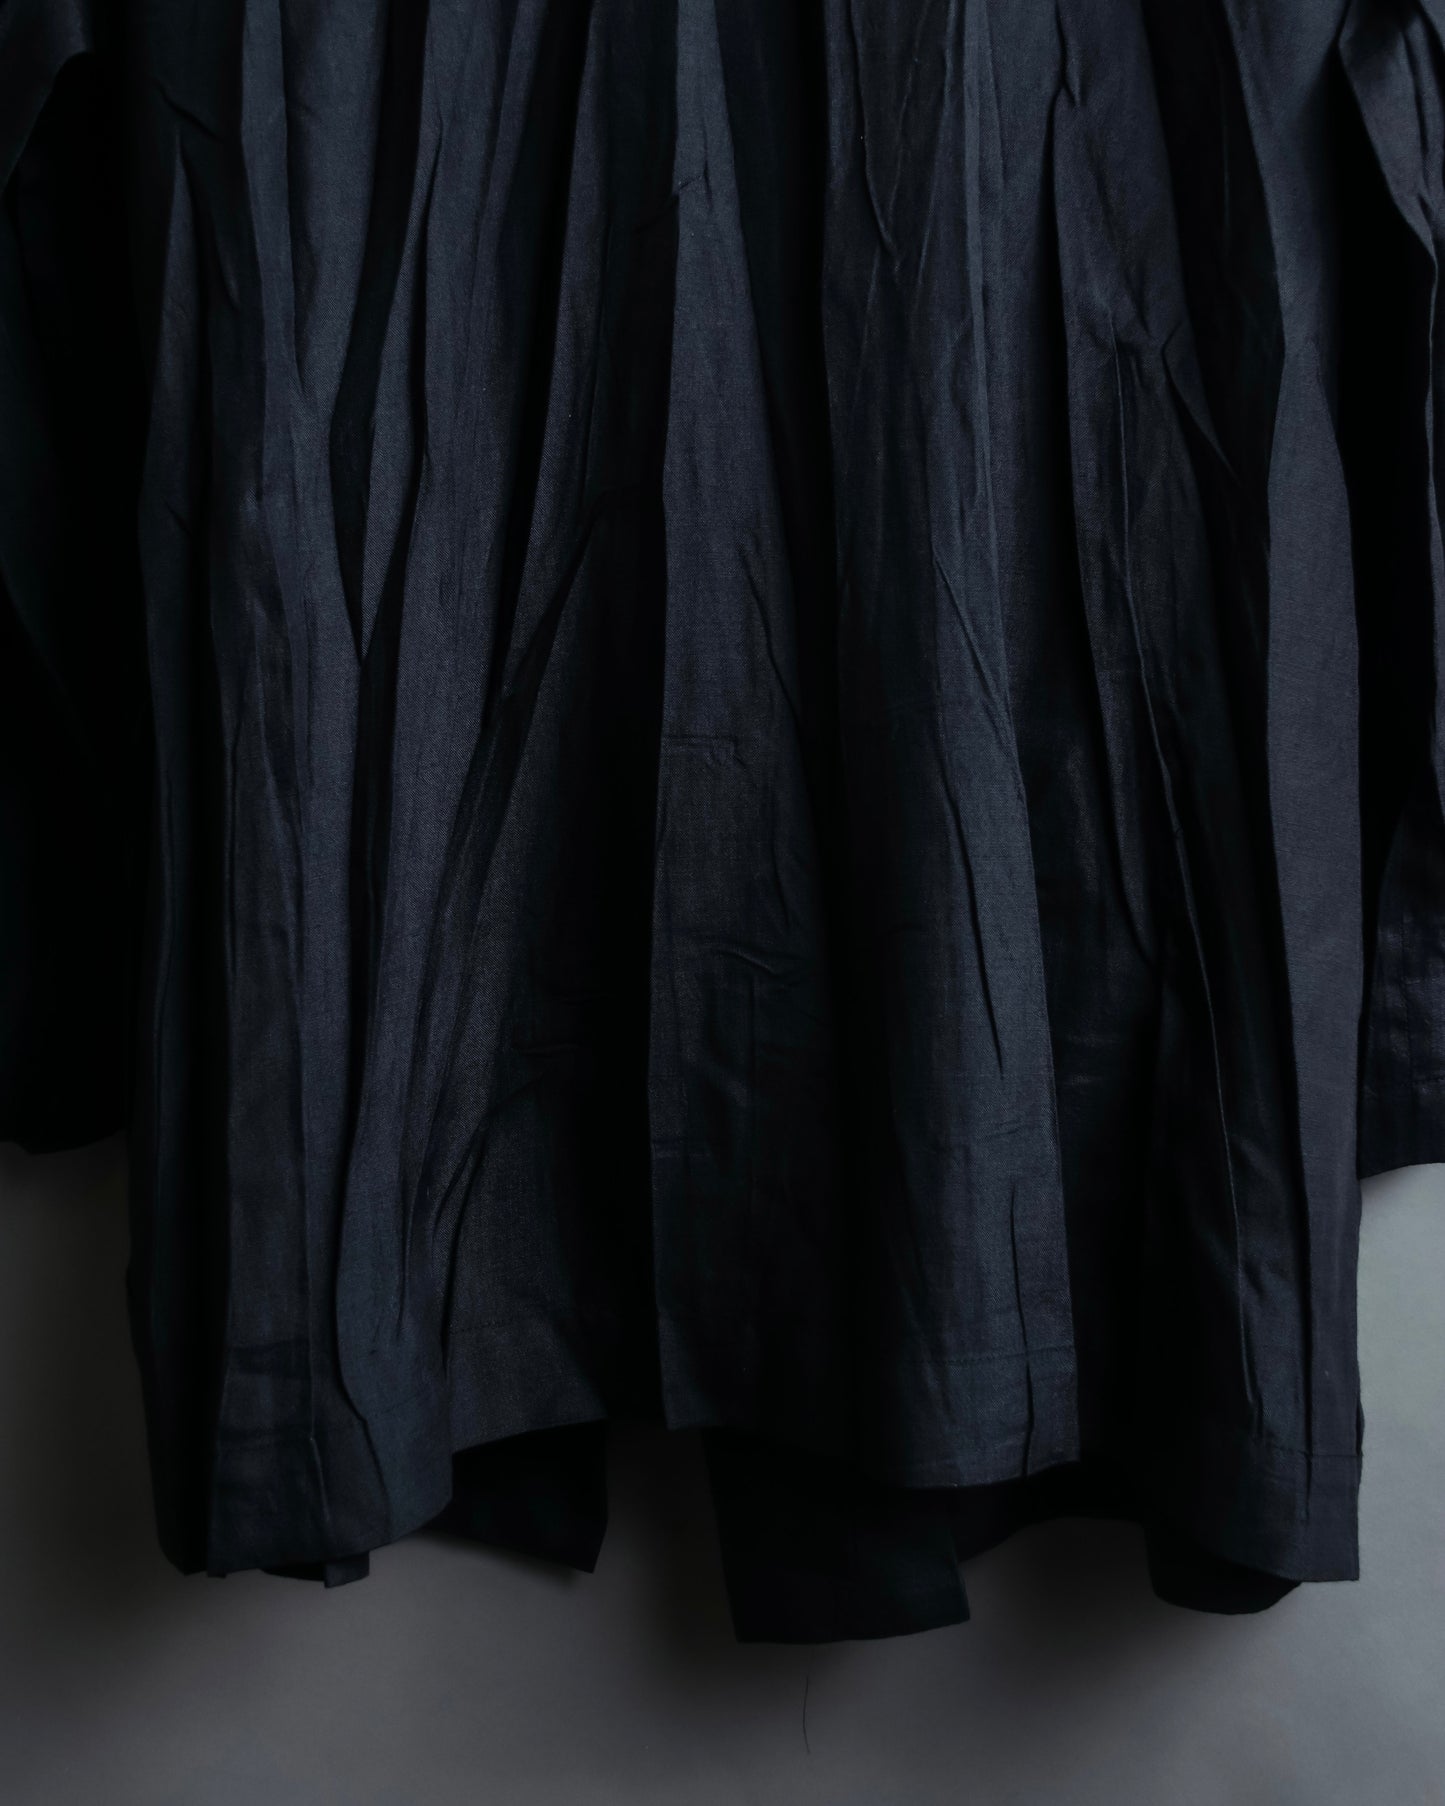 “ISSEY MIYAKE” wrinkle processing oversize tailored jacket